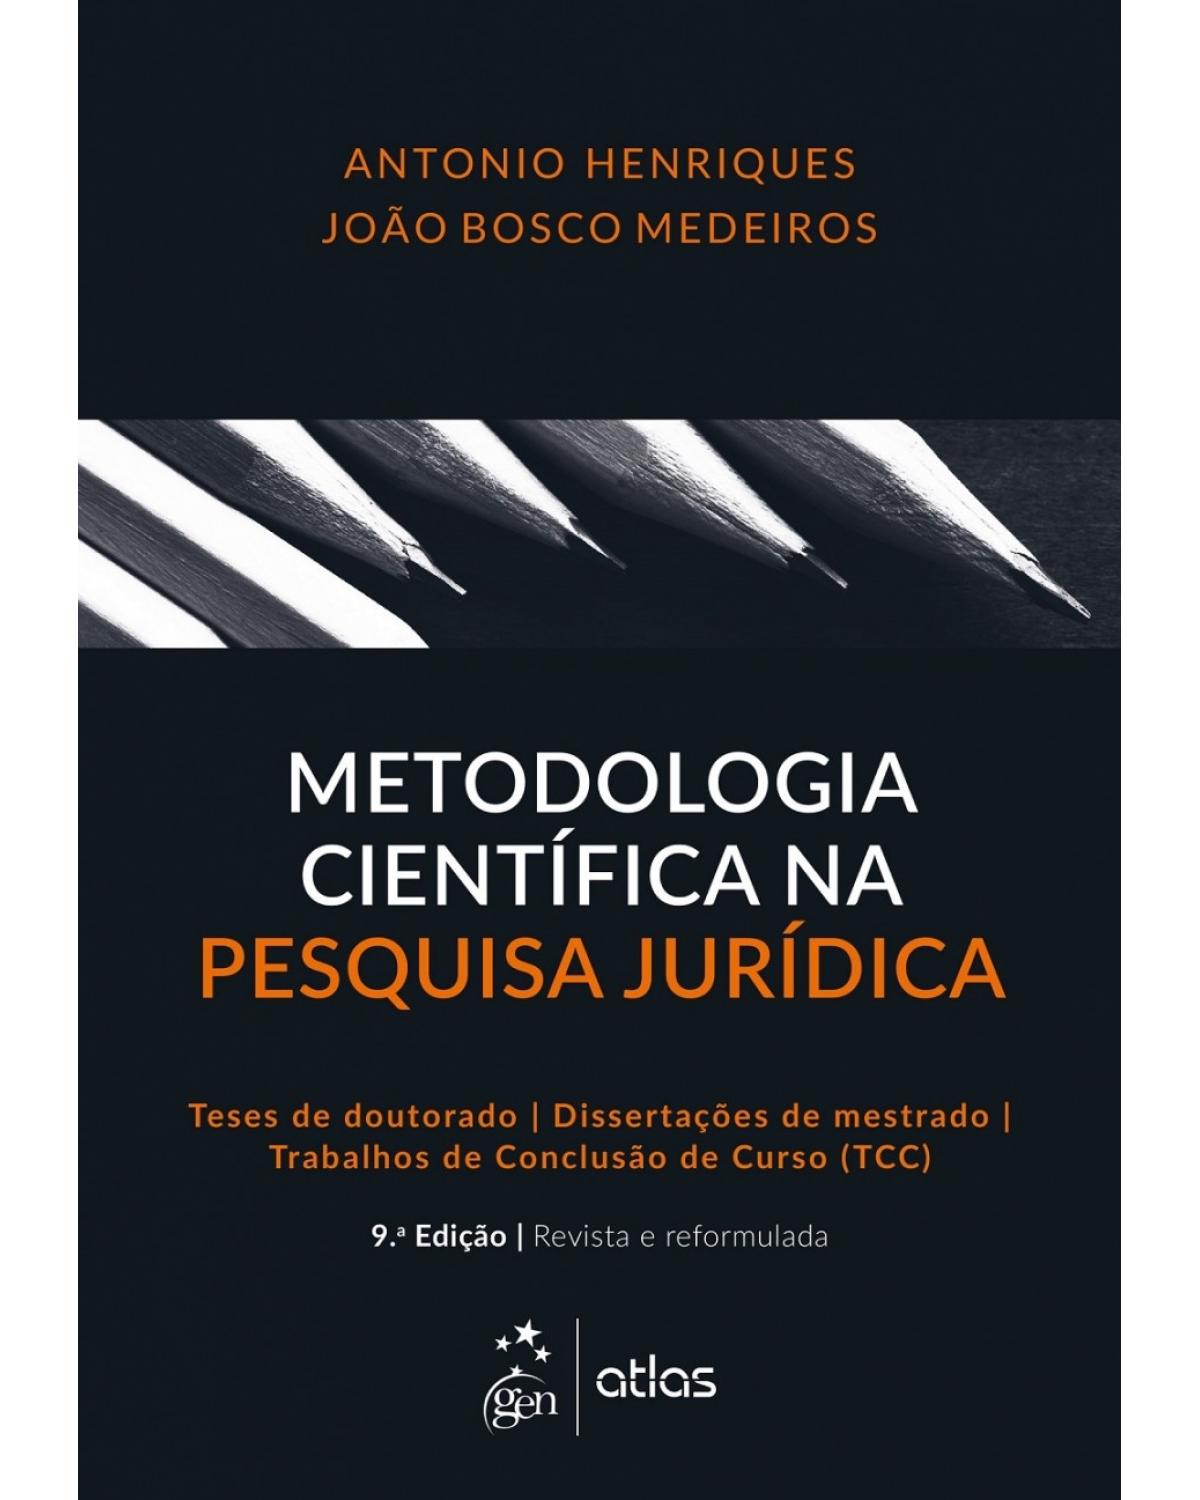 Metodologia científica na pesquisa jurídica - 9ª Edição | 2017